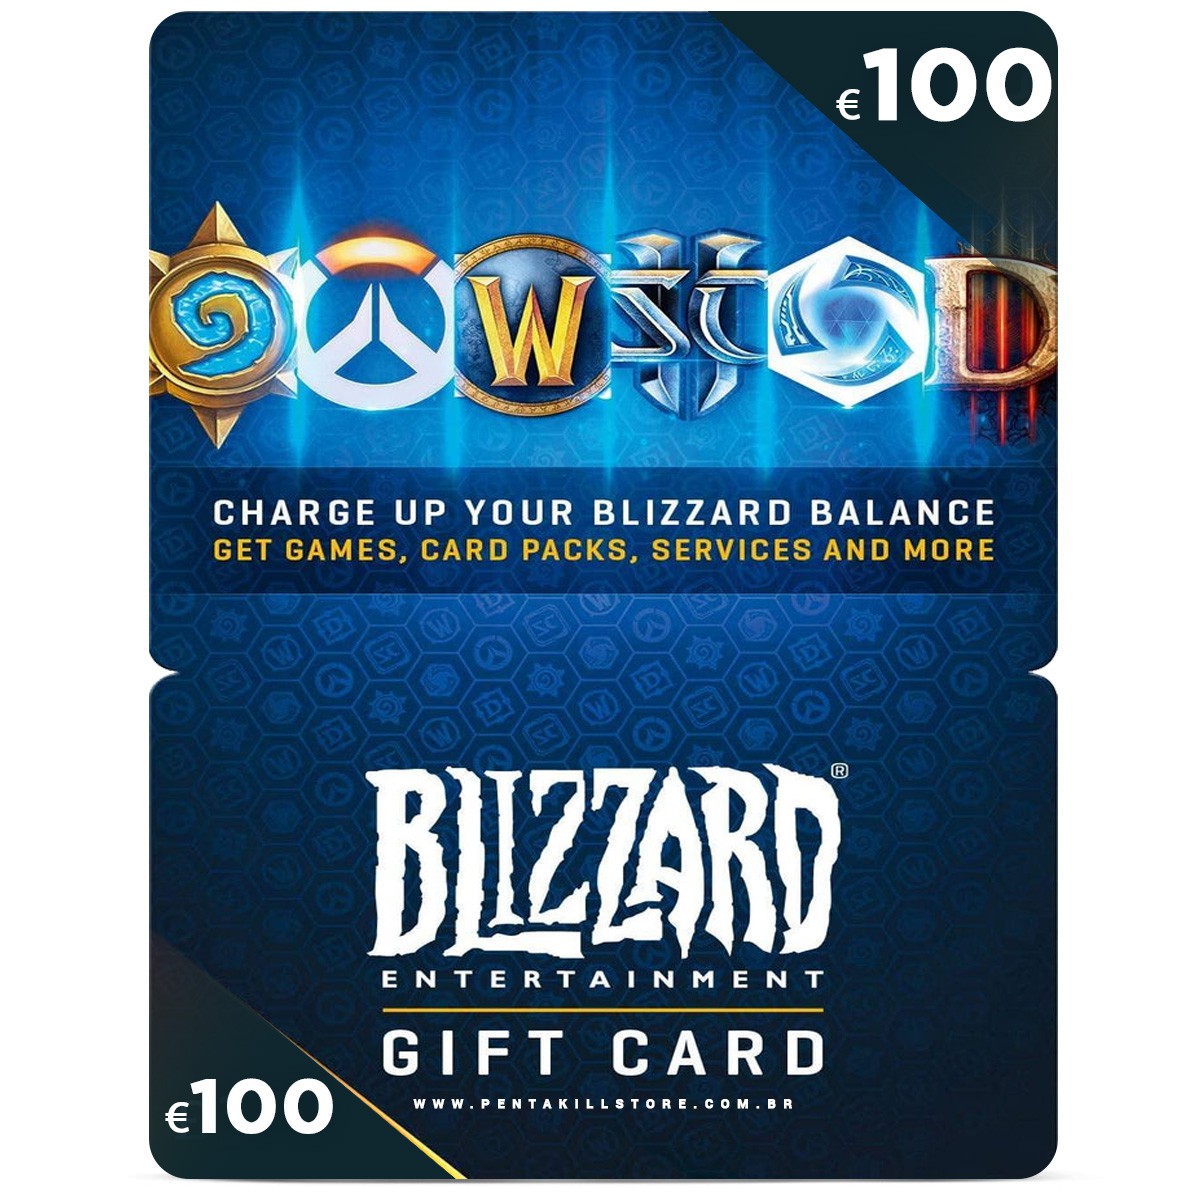 Steam Gift Card - Cartão Pré Pago R$ 20 - Código Digital - PentaKill Store  - Gift Card e Games